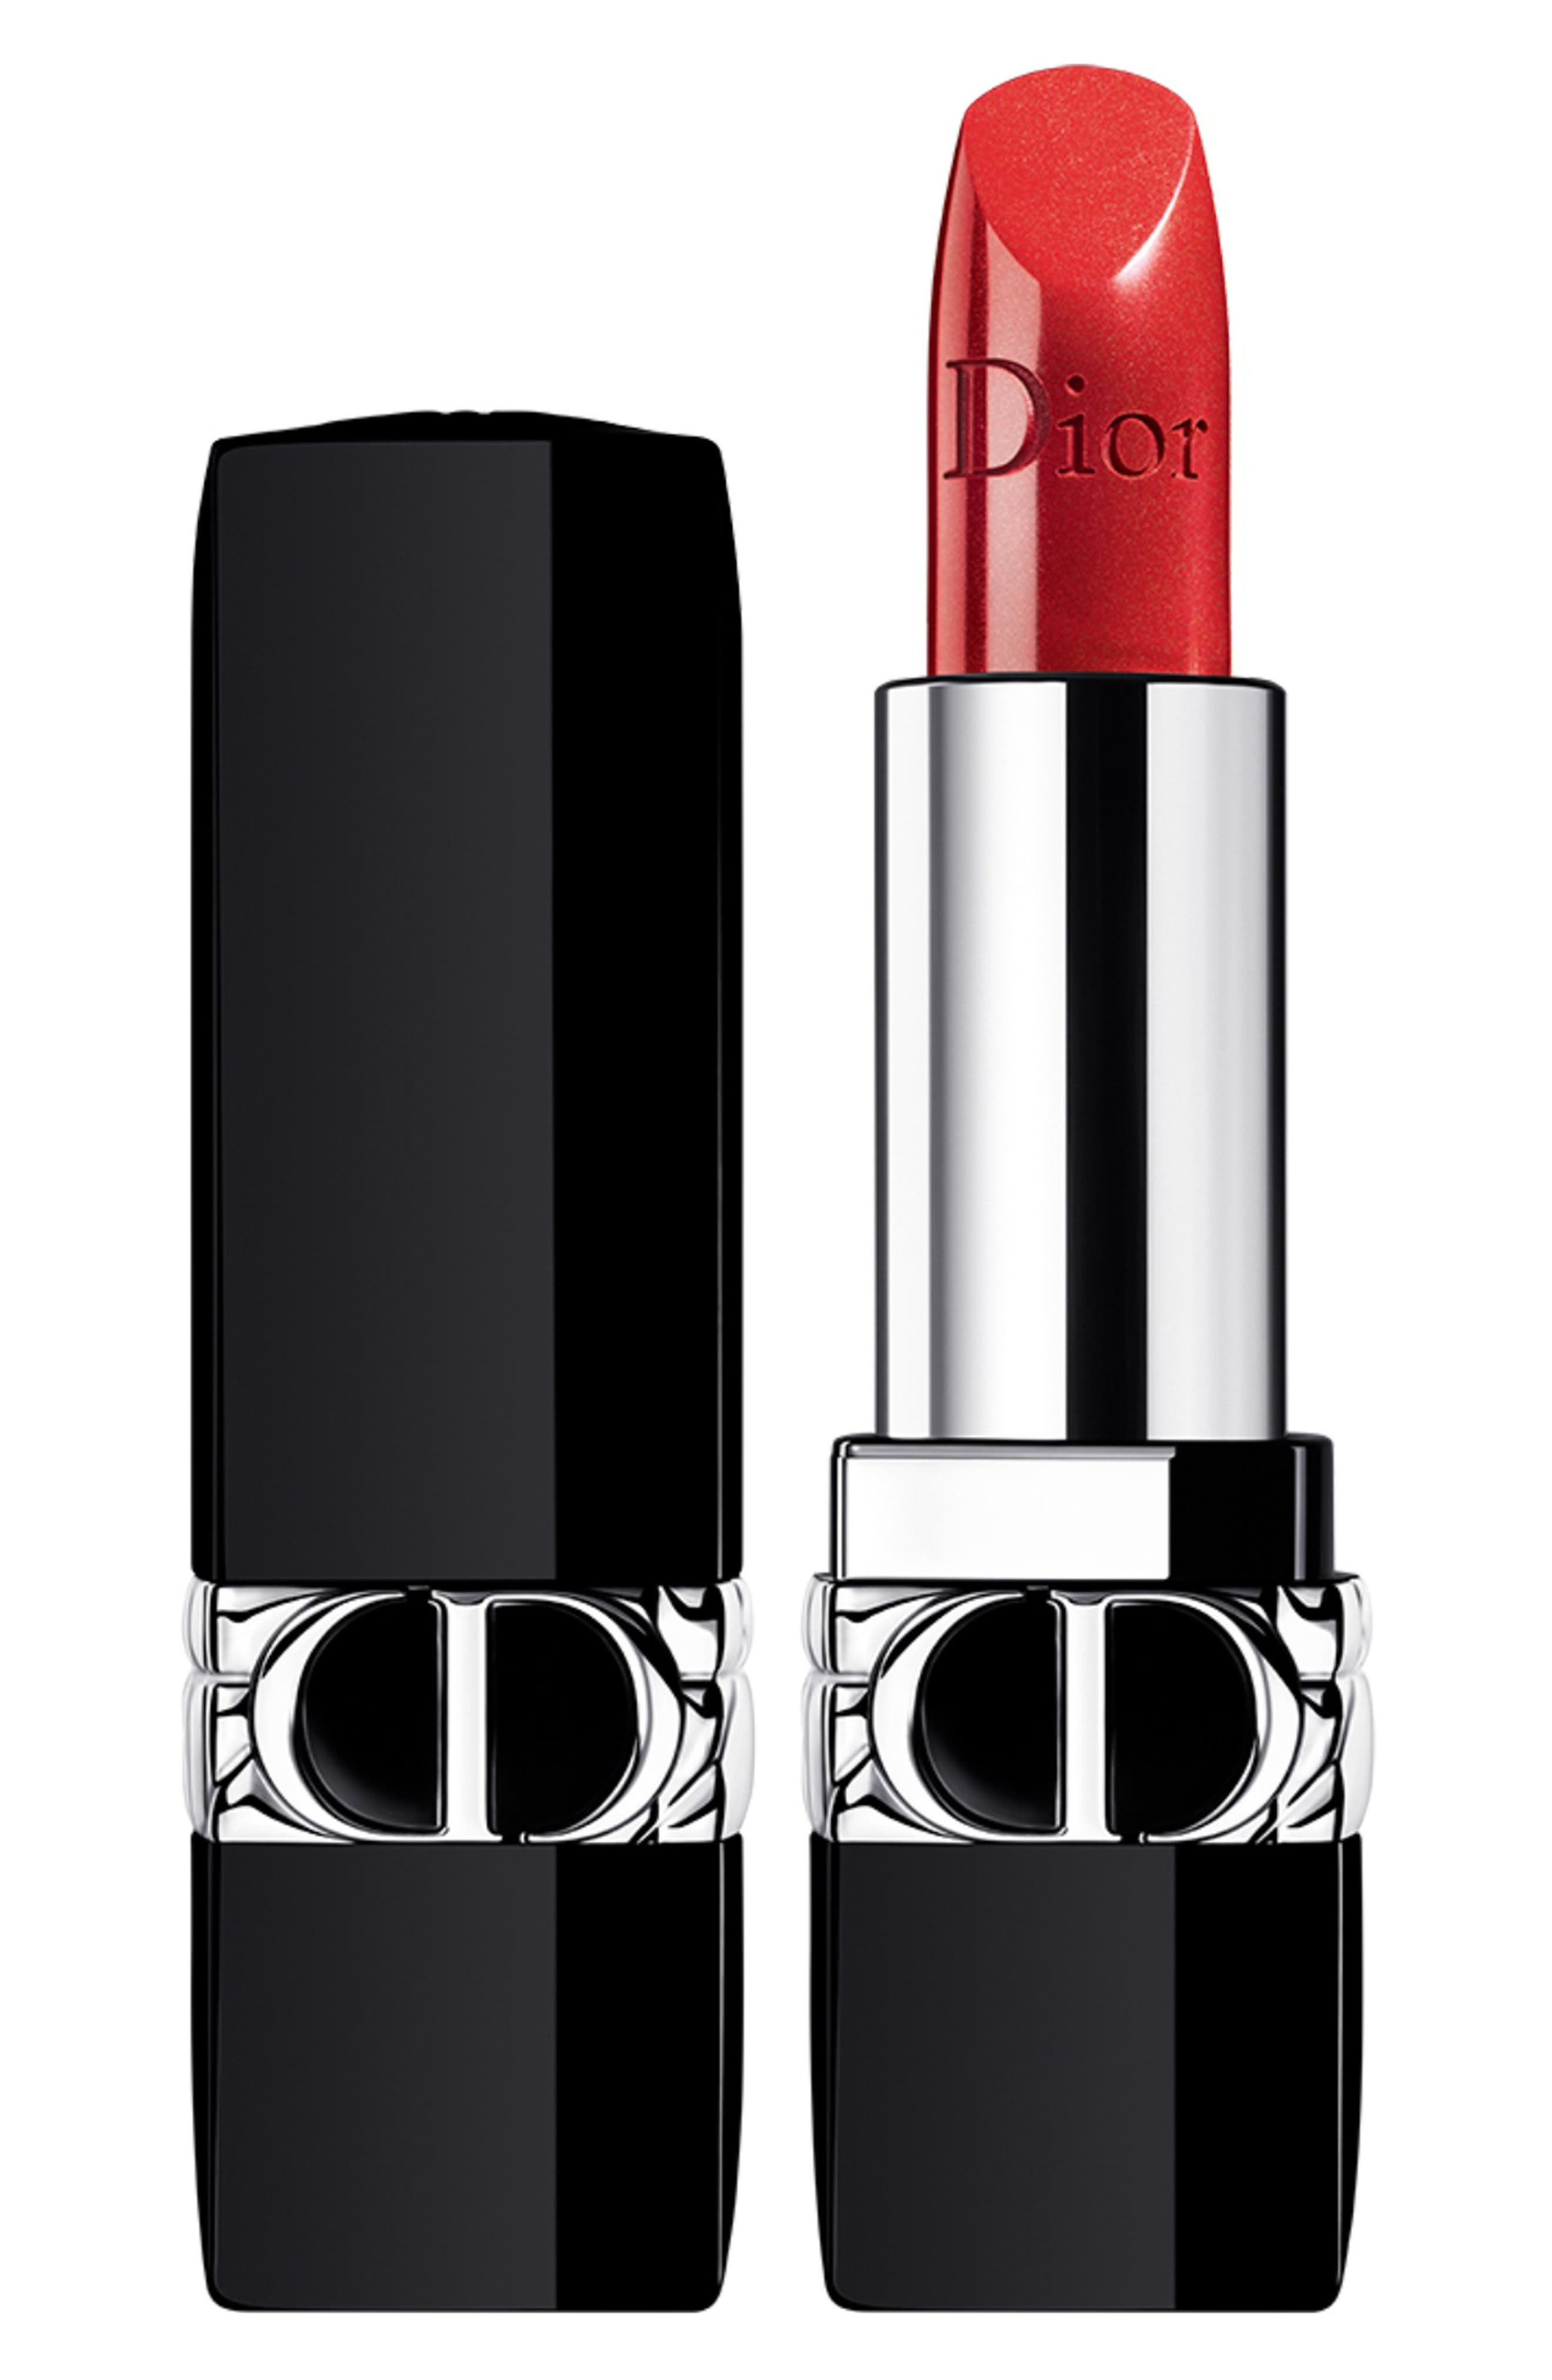 dior dark flower lipstick